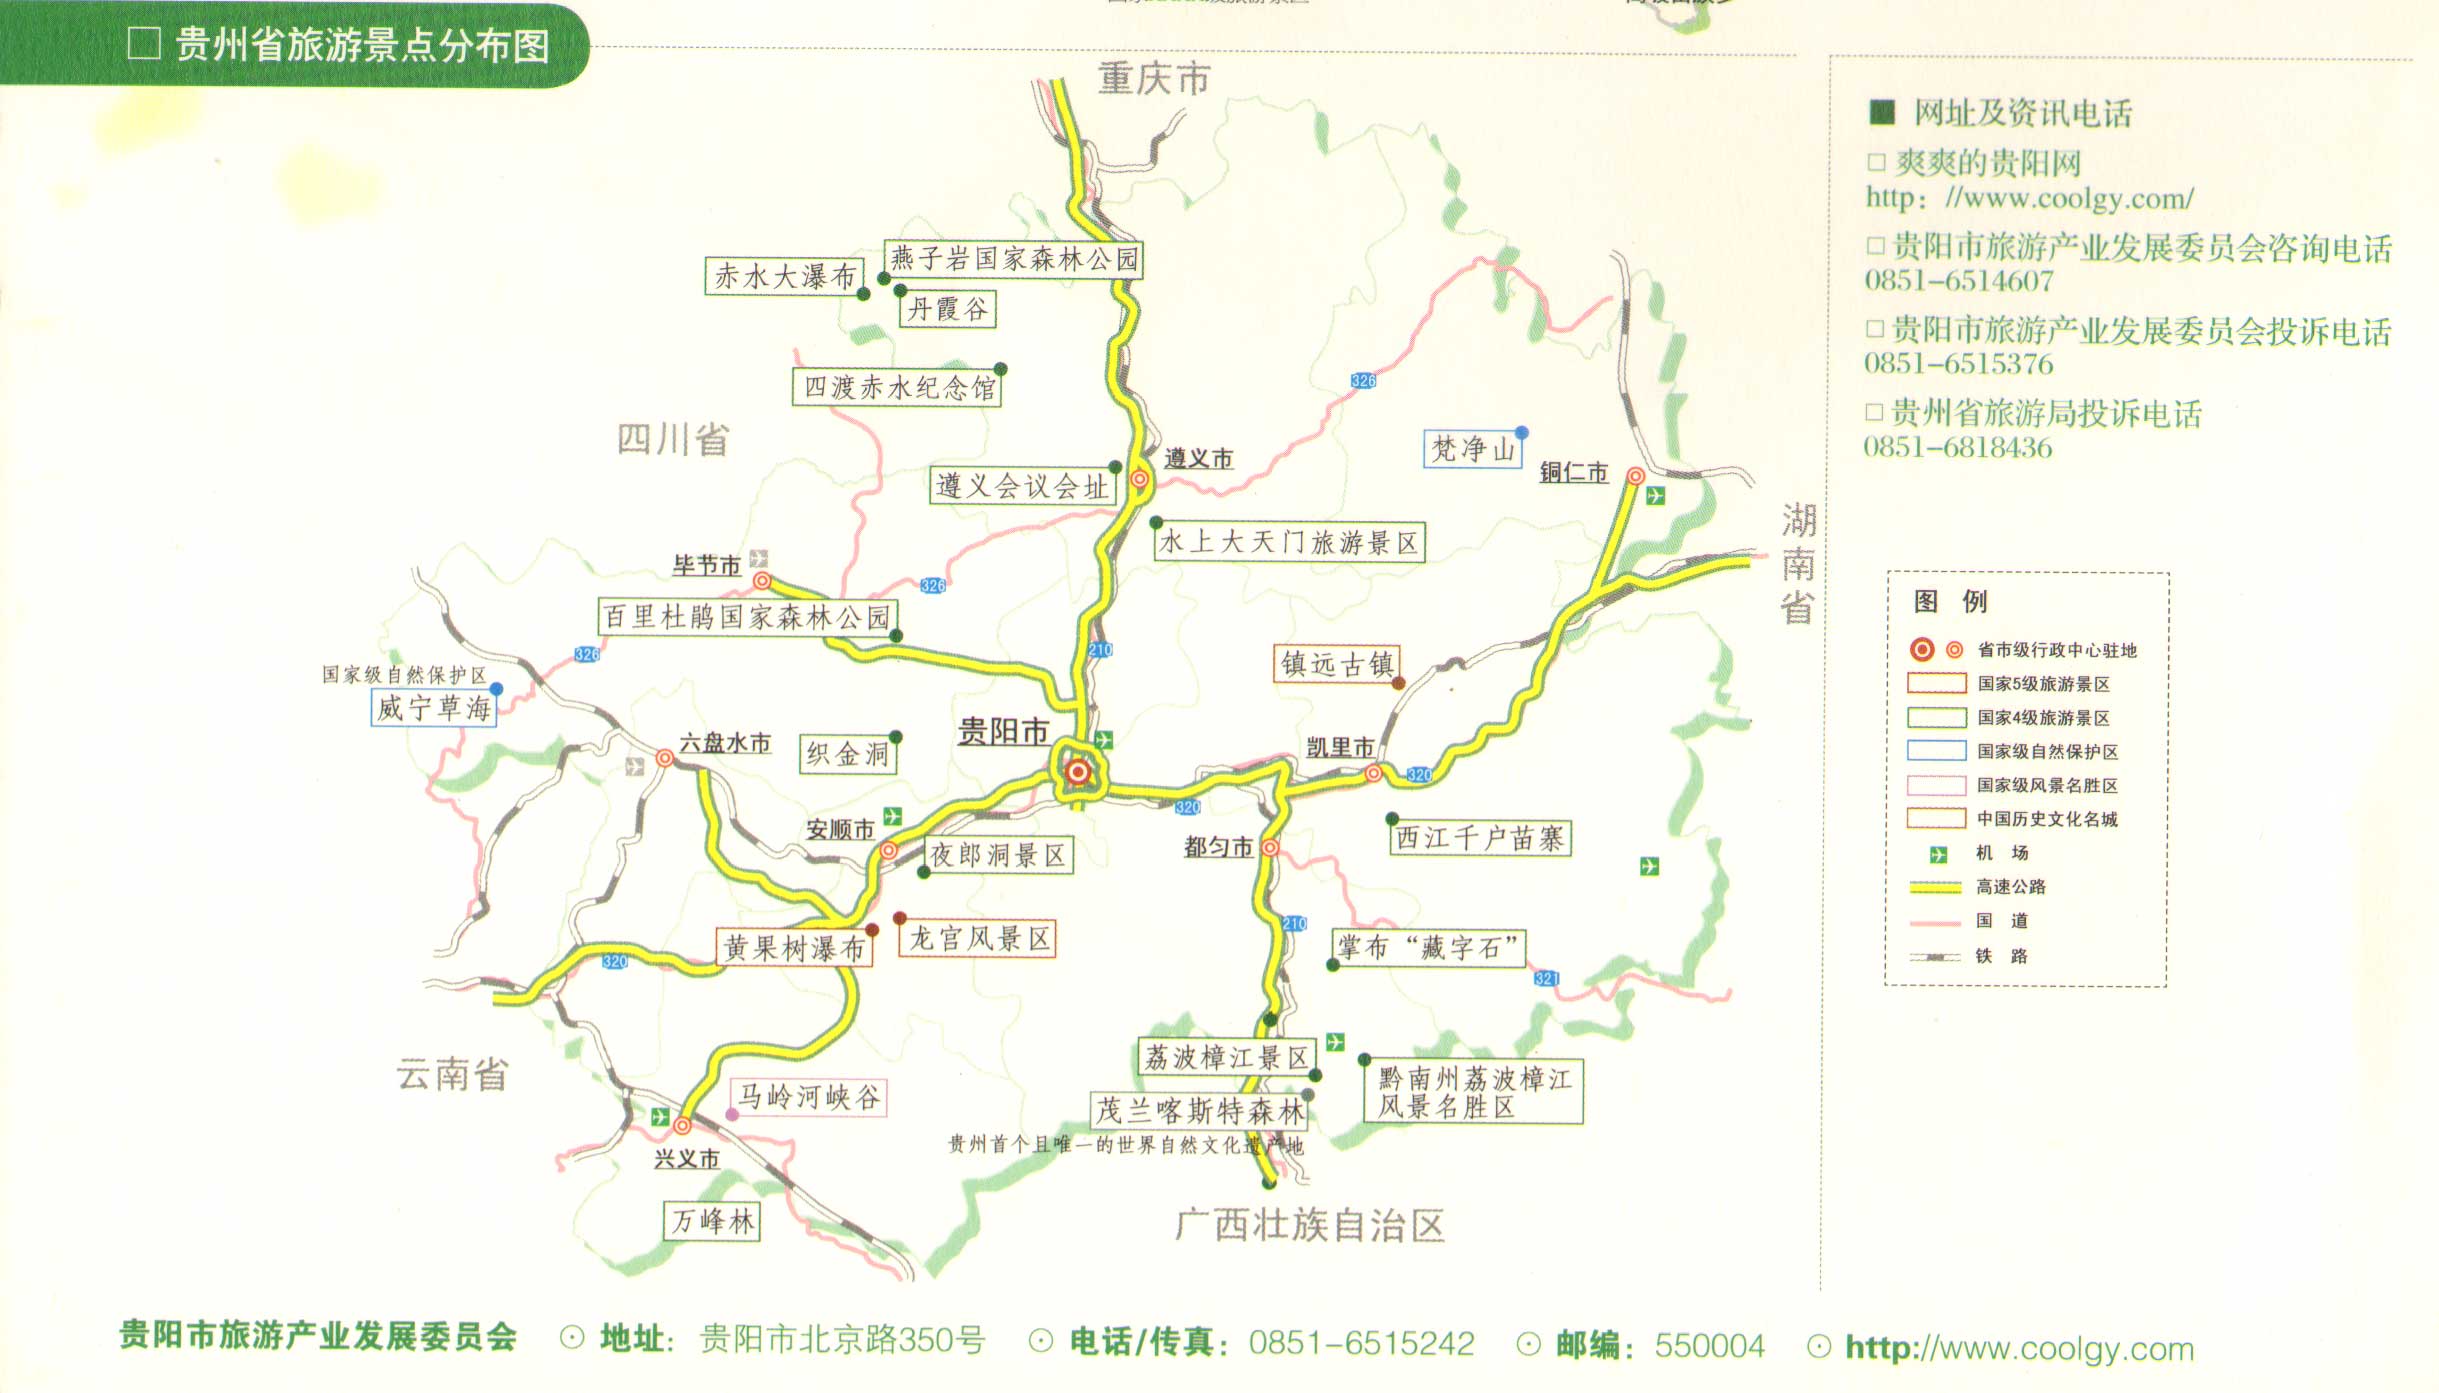 贵州省旅游景点分布图_贵州旅游地图库_地图窝图片